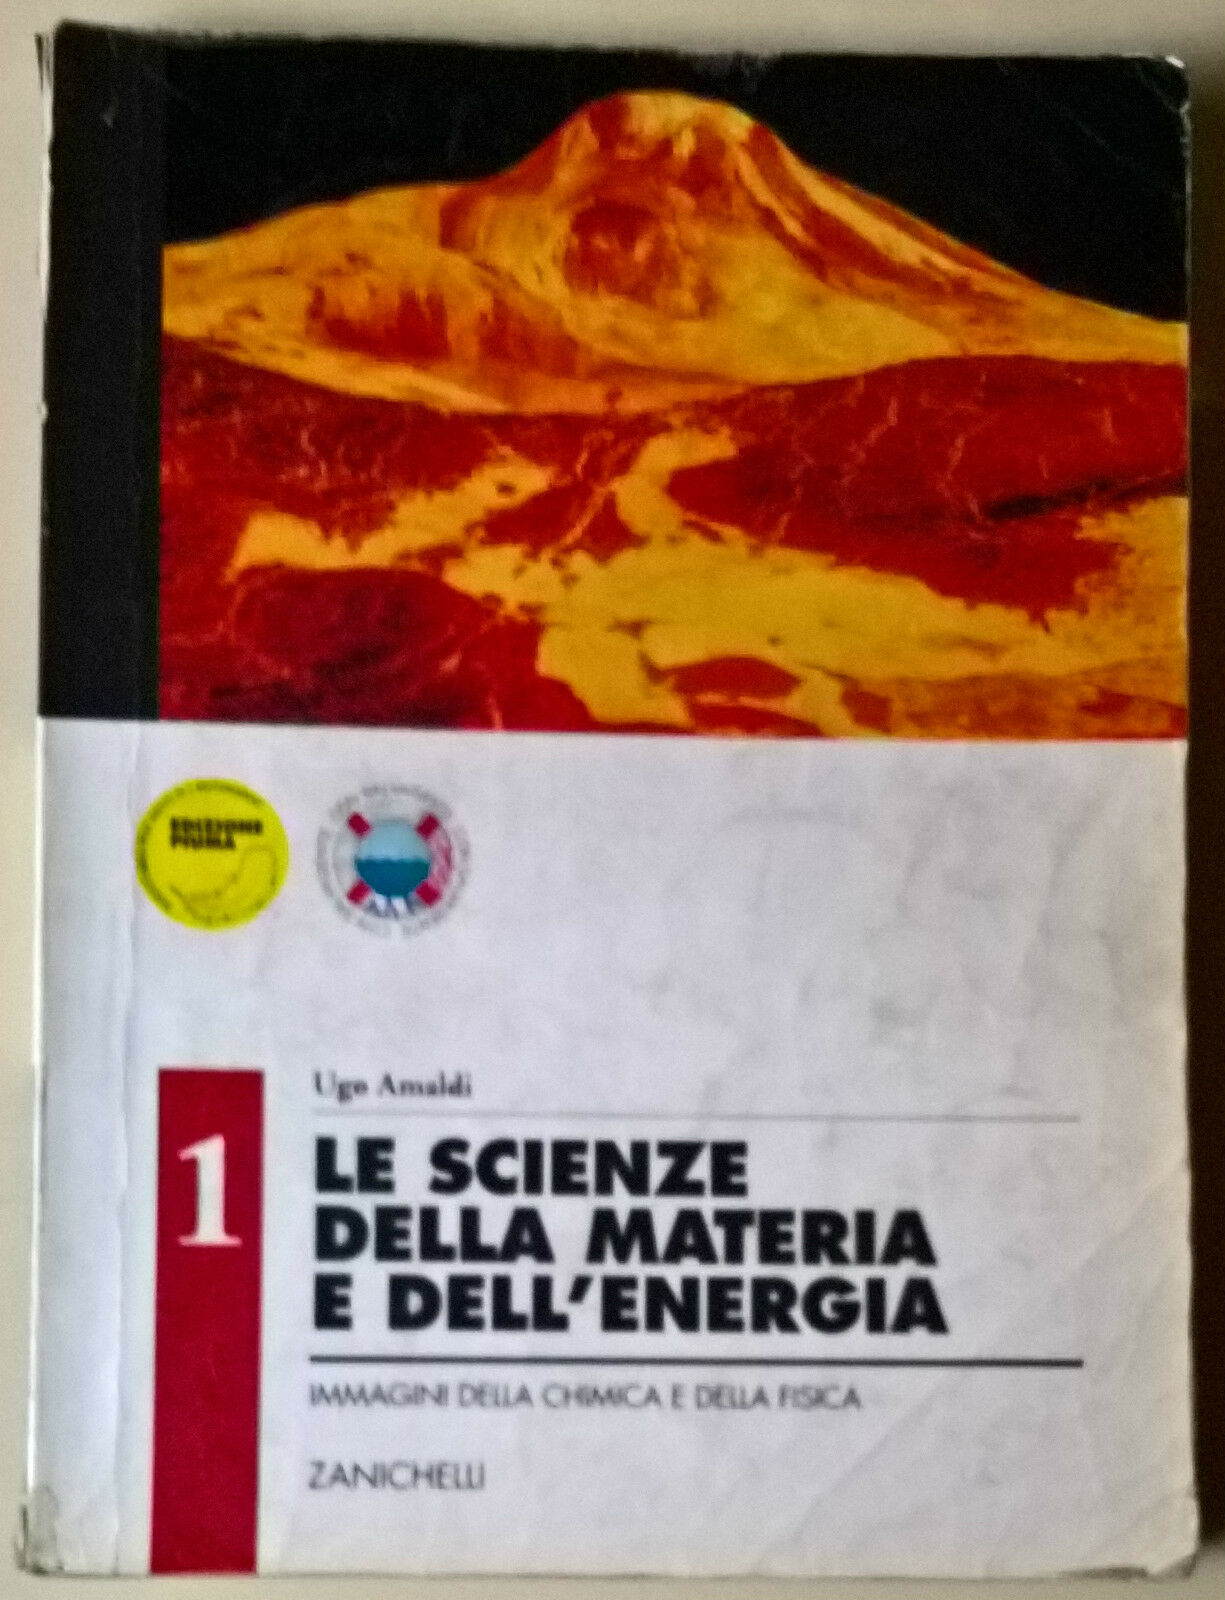 Le scienze della materia e delL'energia 1 - Ugo Amaldi - 1996, Zanichelli - L